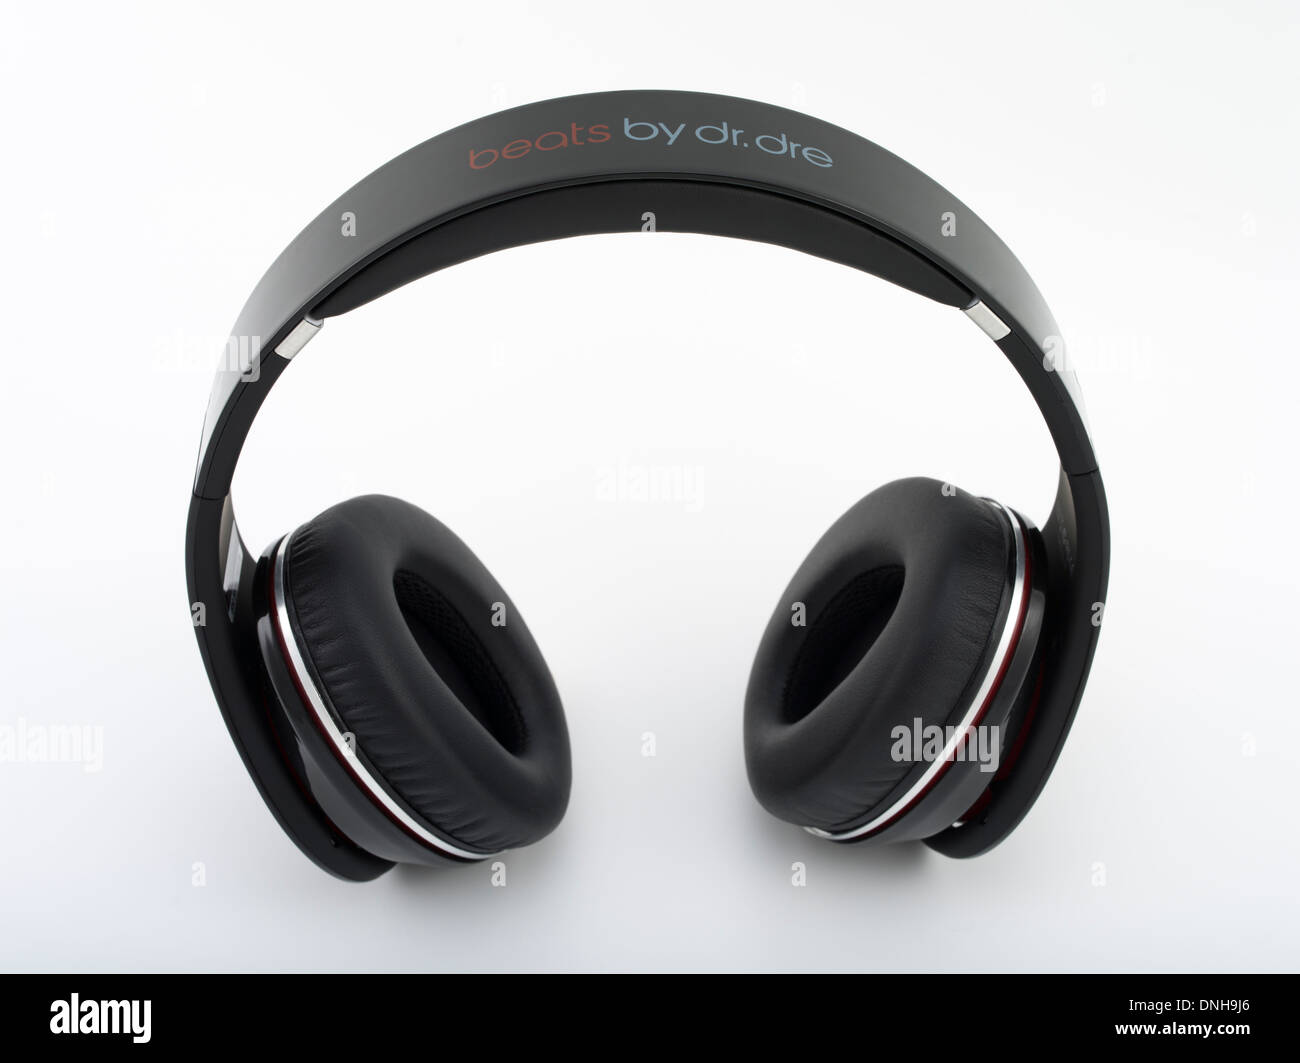 Beats by Dr. Dre studio headphones 2008 produit par Monster Cable. Gadget emblématique / équipement audio. Banque D'Images